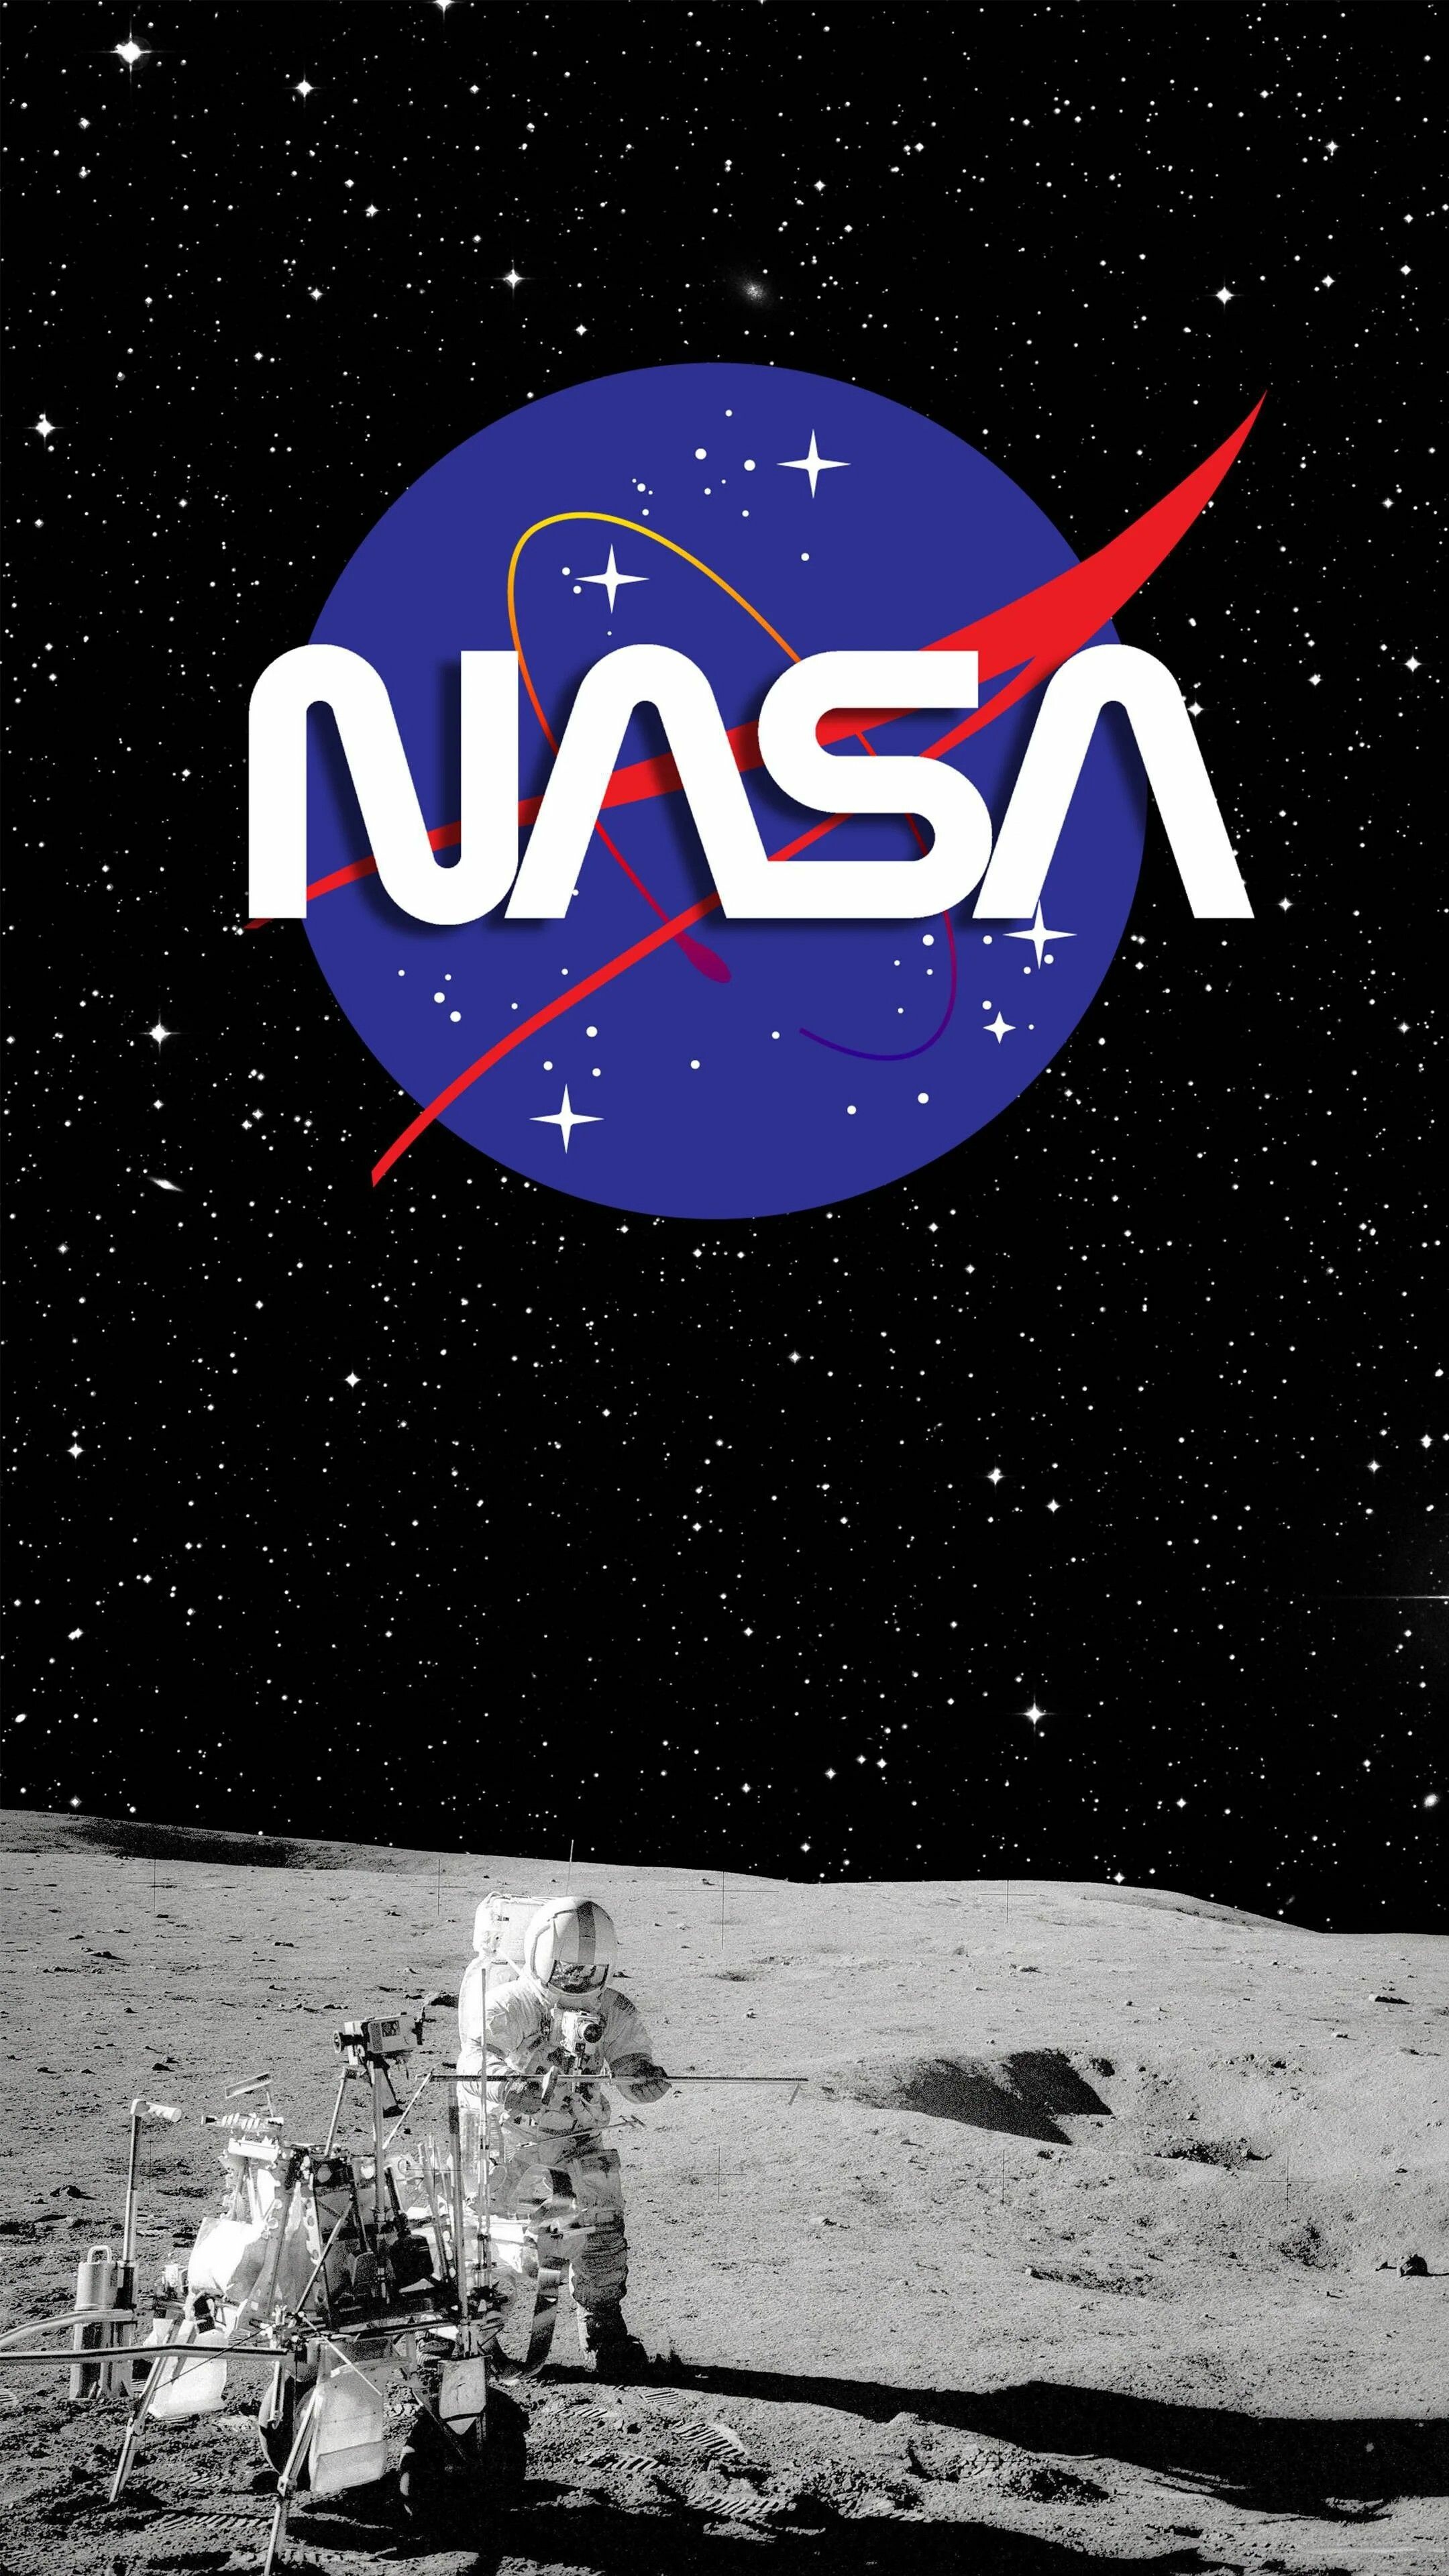 NASA Wallpaper: 4K, HD, 1920x1080